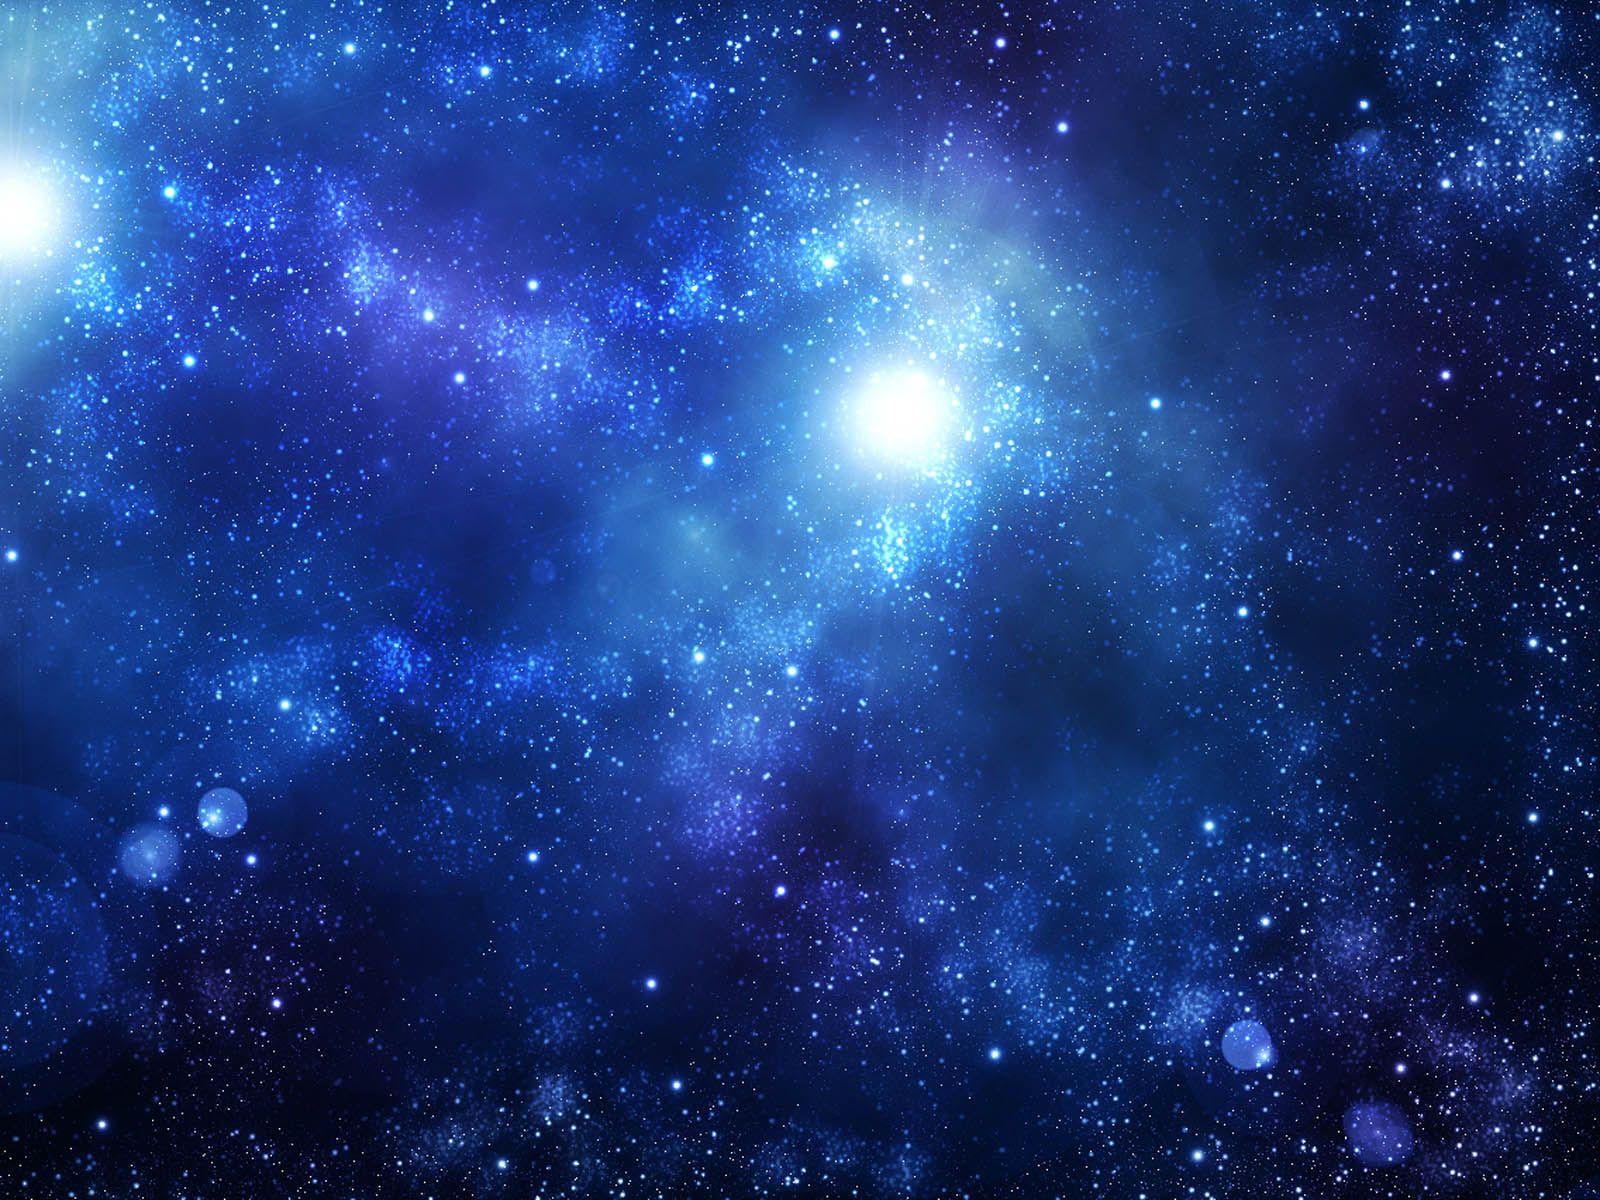 3D Galaxy Wallpapers - Top Những Hình Ảnh Đẹp